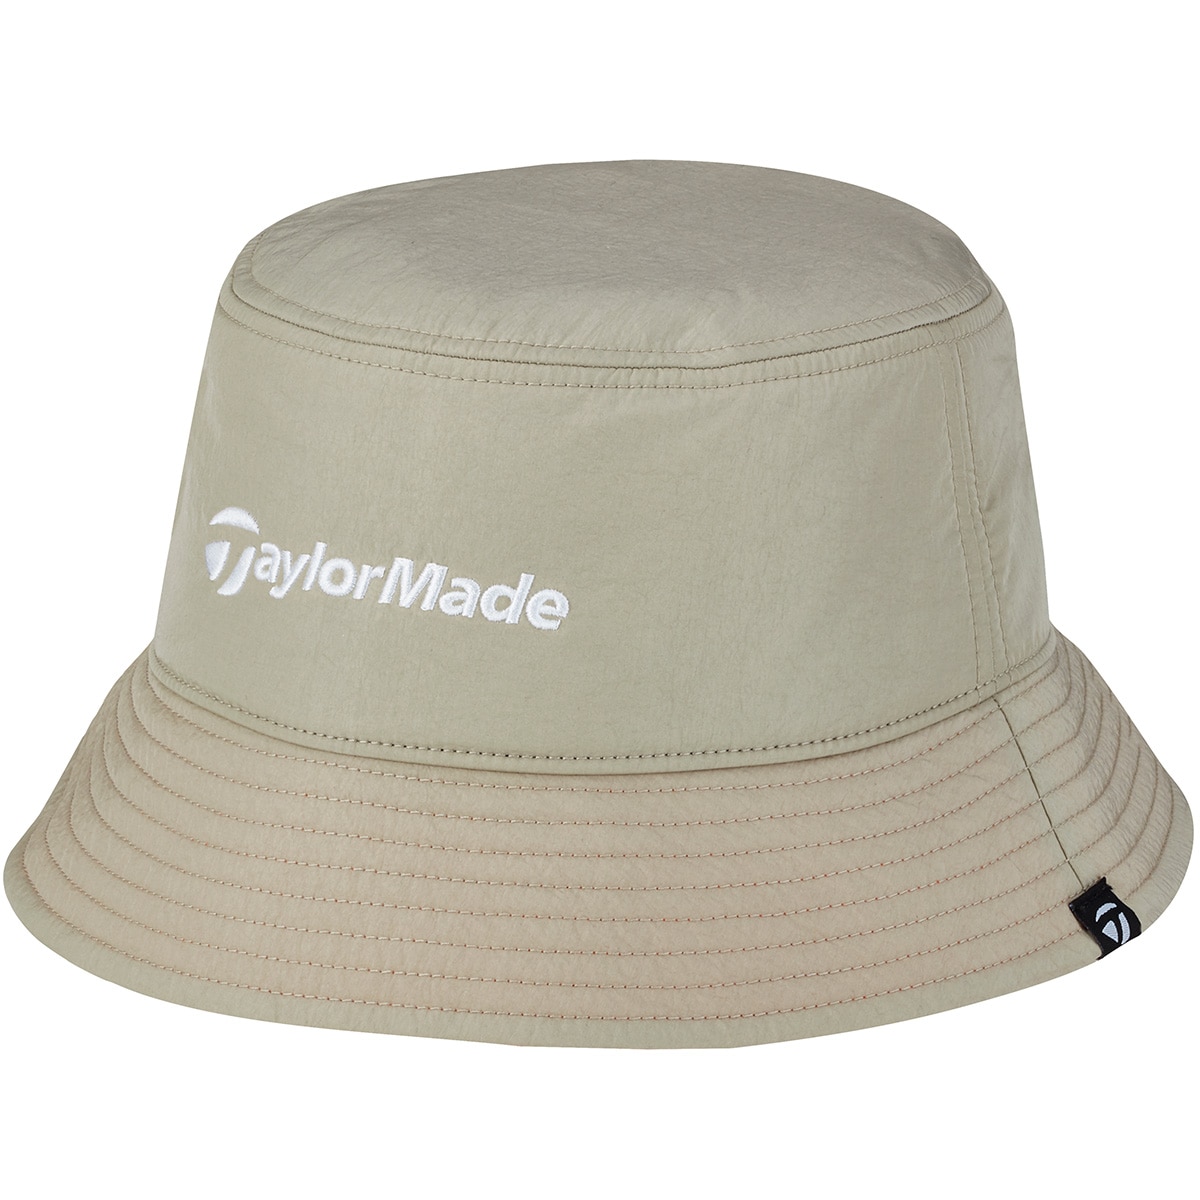 ウィンターバケットハット(【男性】その他帽子)|Taylor Made